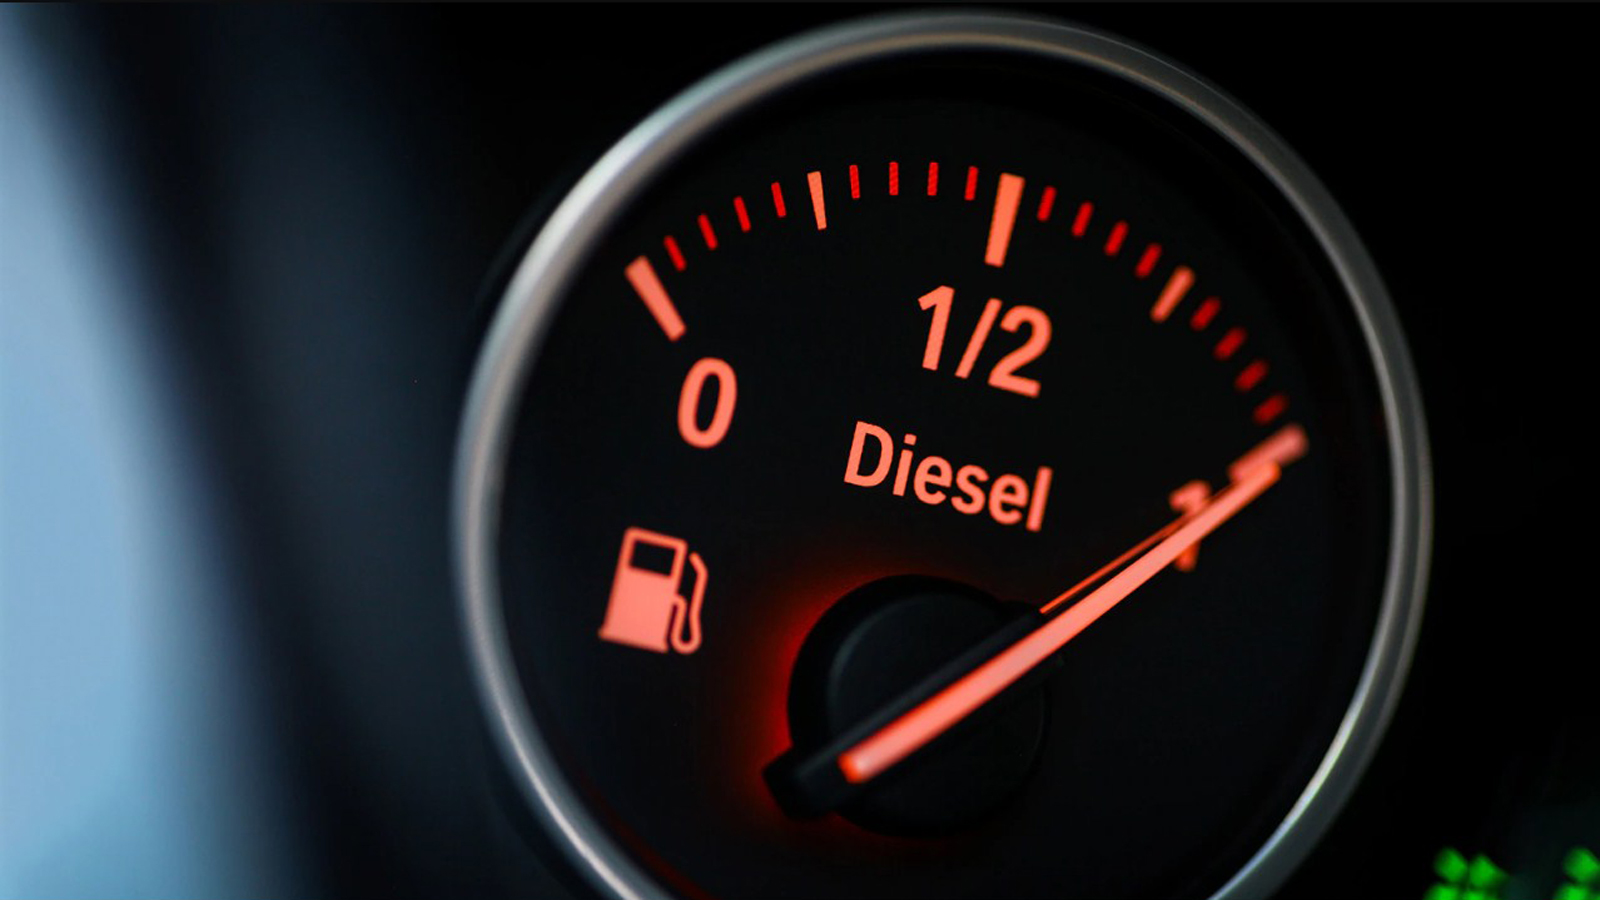 Τι πρέπει να προσέχω στους diesel κινητήρες για μην αυξηθεί η κατανάλωση;